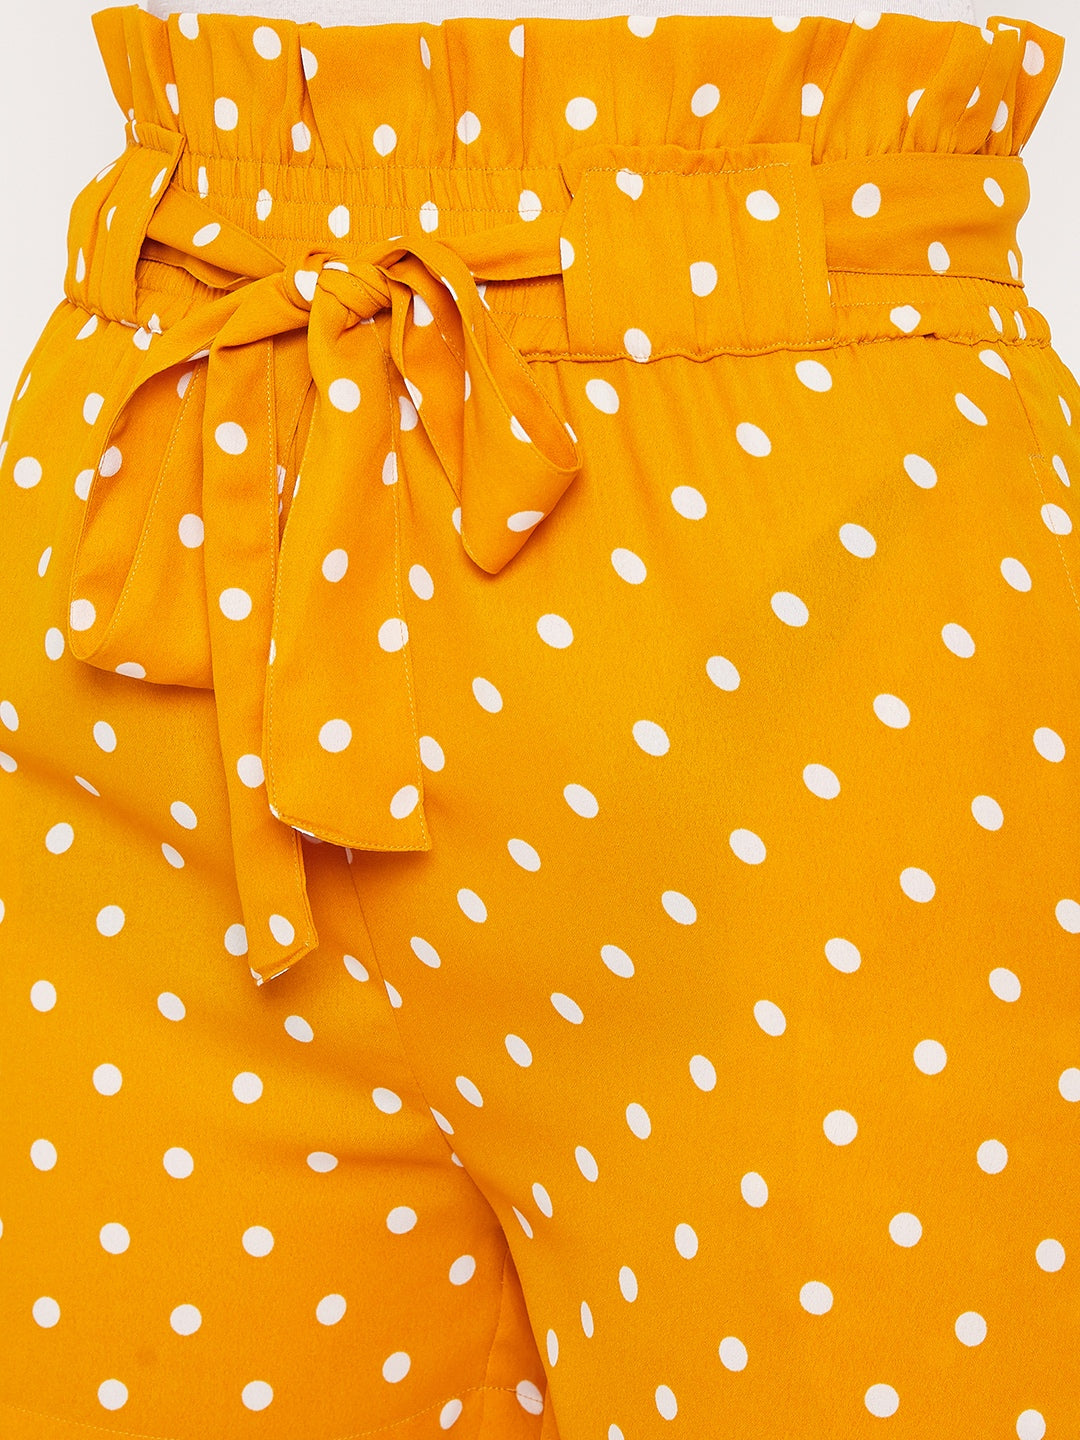 Women Mustard Yellow Printed Loose Fit Regular Shorts